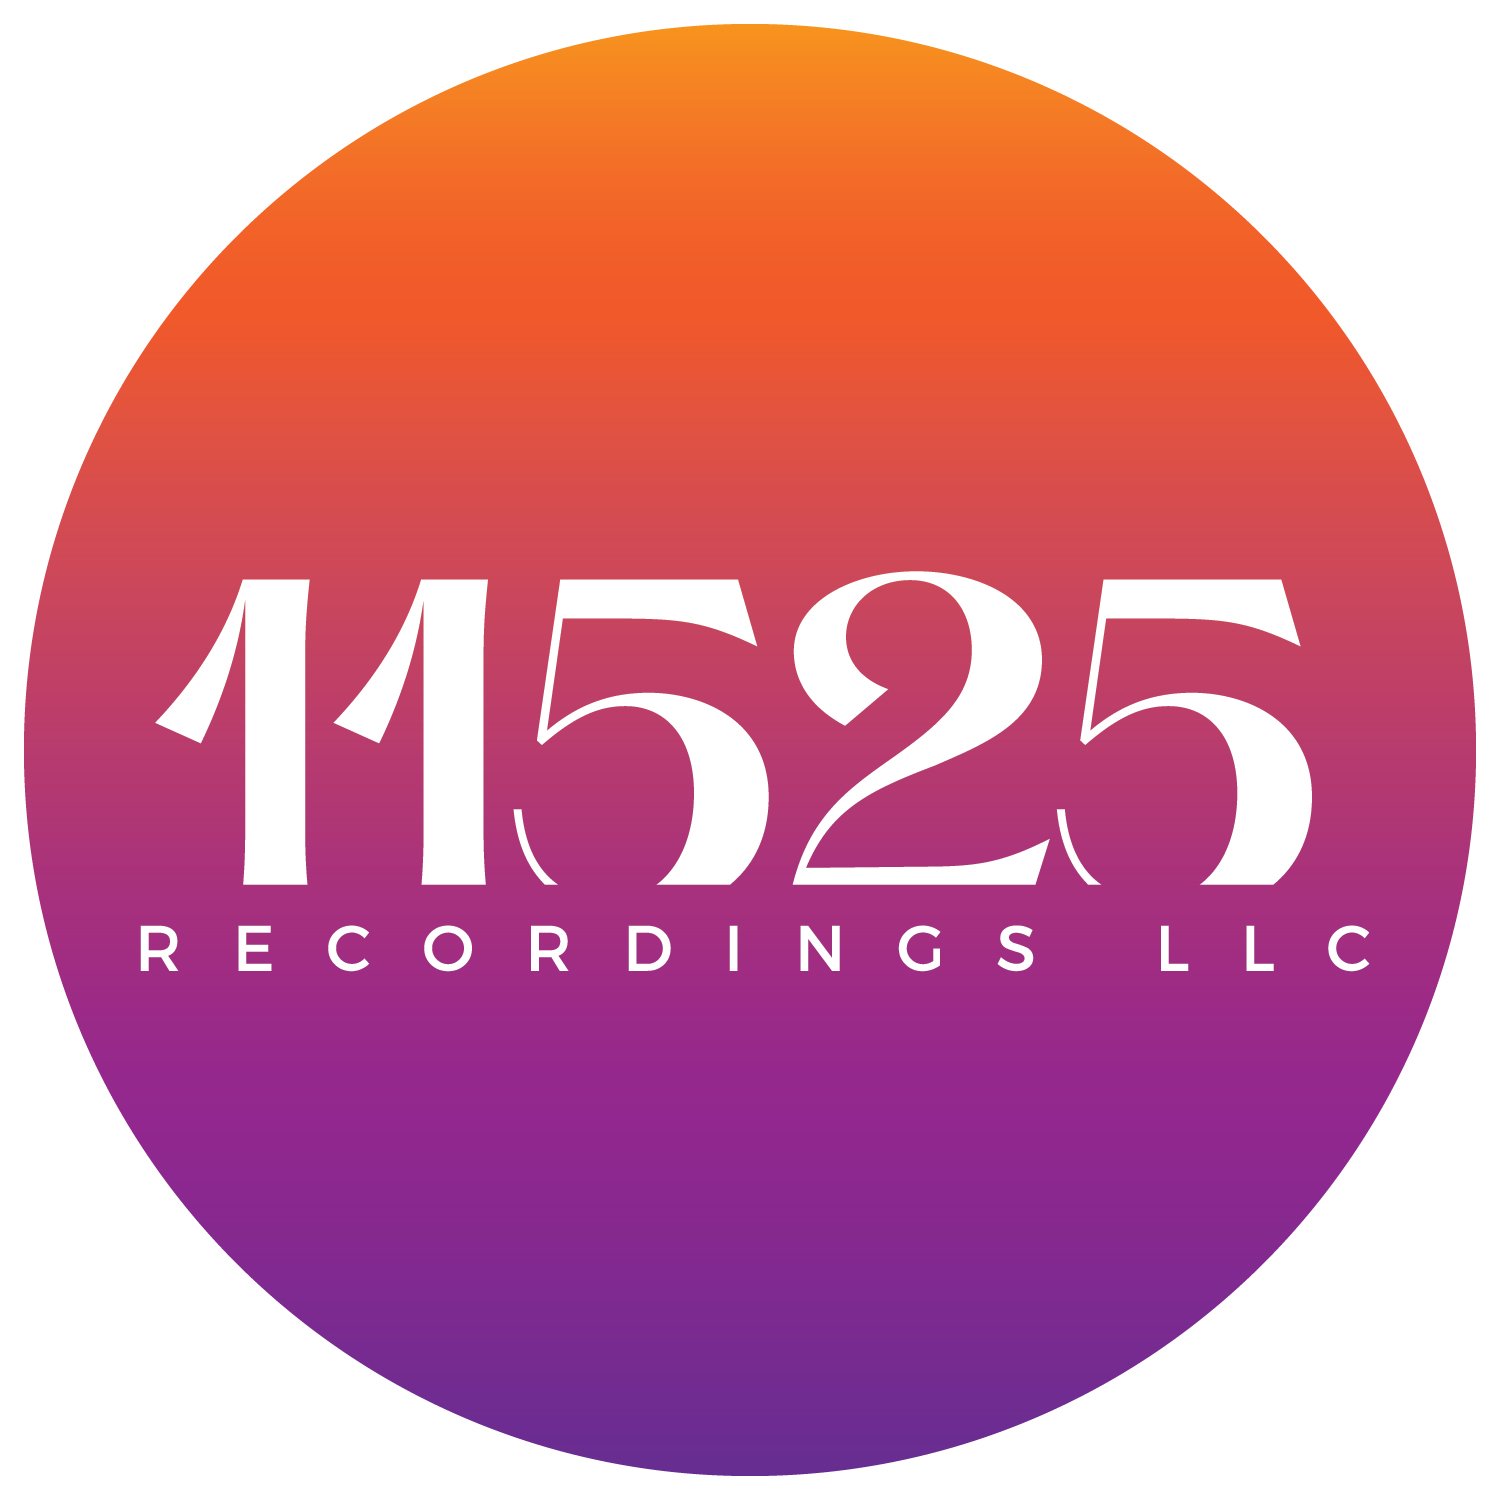 11525 Recordings